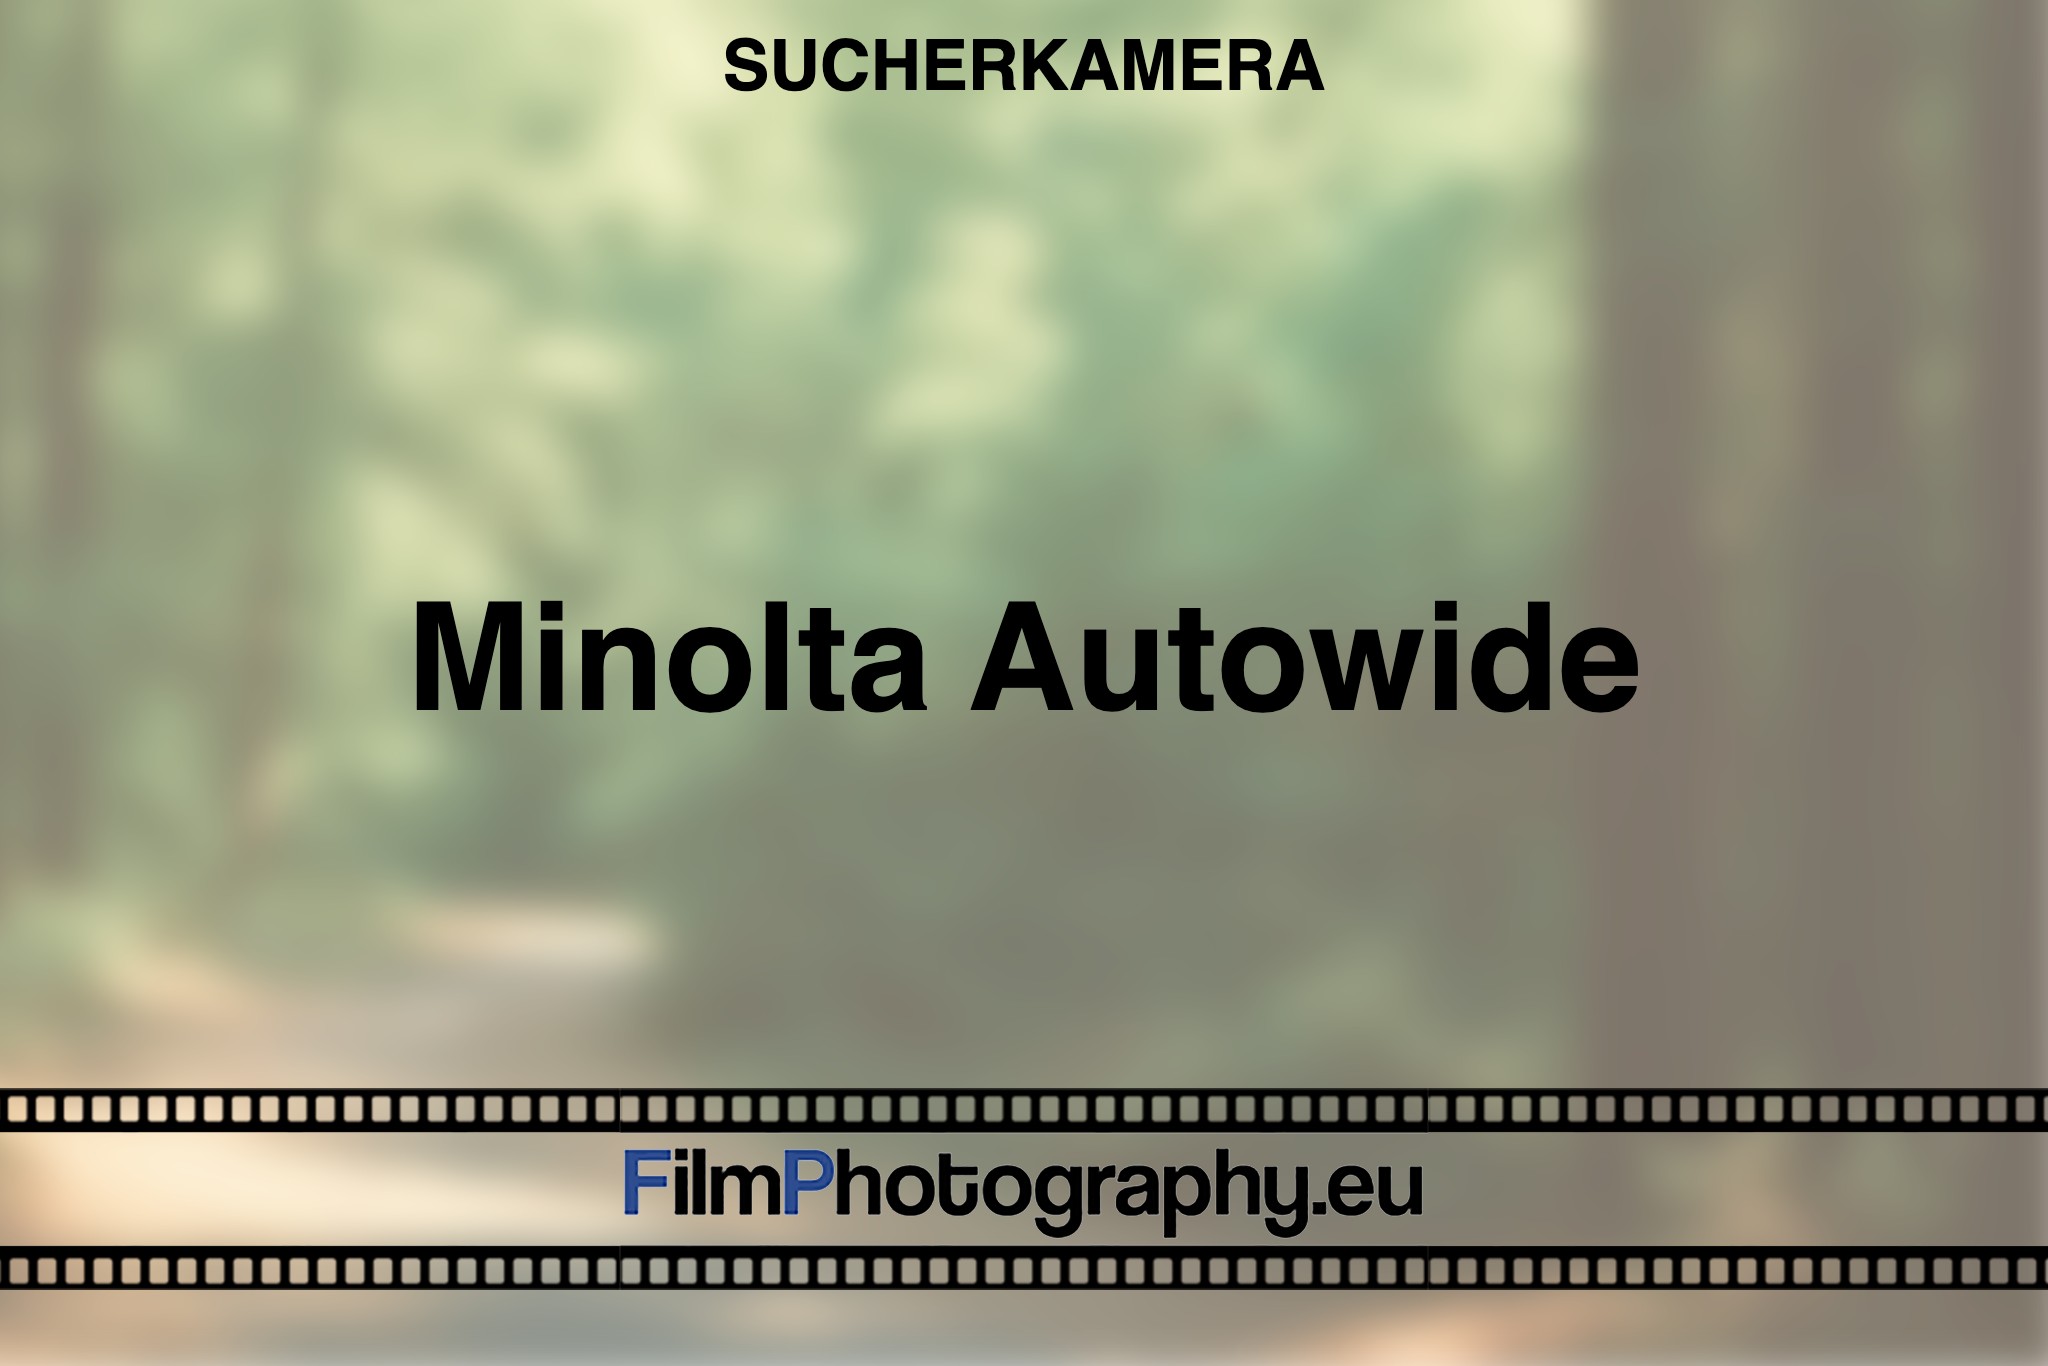 minolta-autowide-sucherkamera-bnv